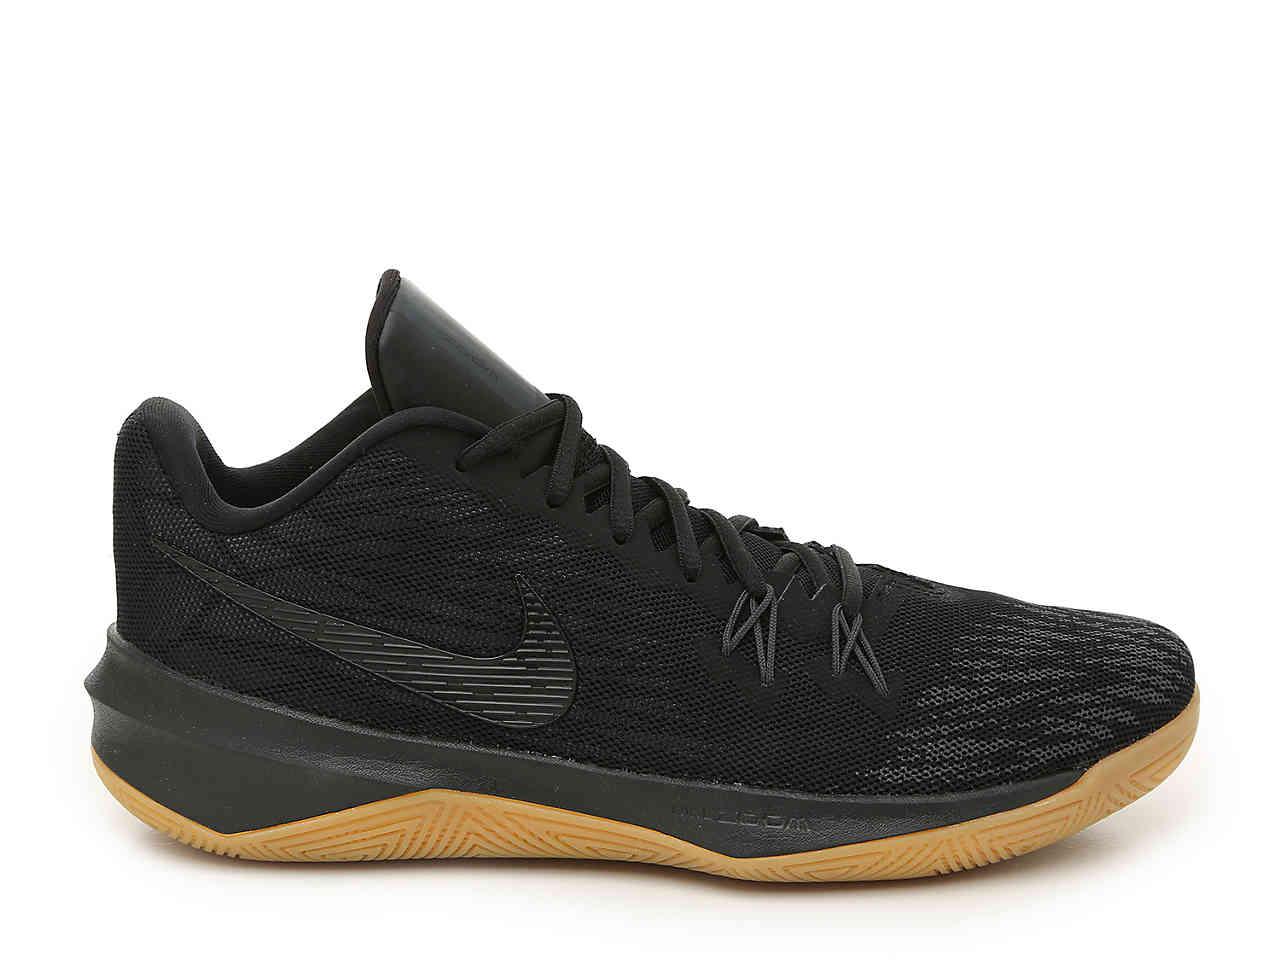 Nike Zoom Evidence Ii Men's Basketball Shoe in Black/Anthracite/Metallic  Dark g (Black) for Men | Lyst